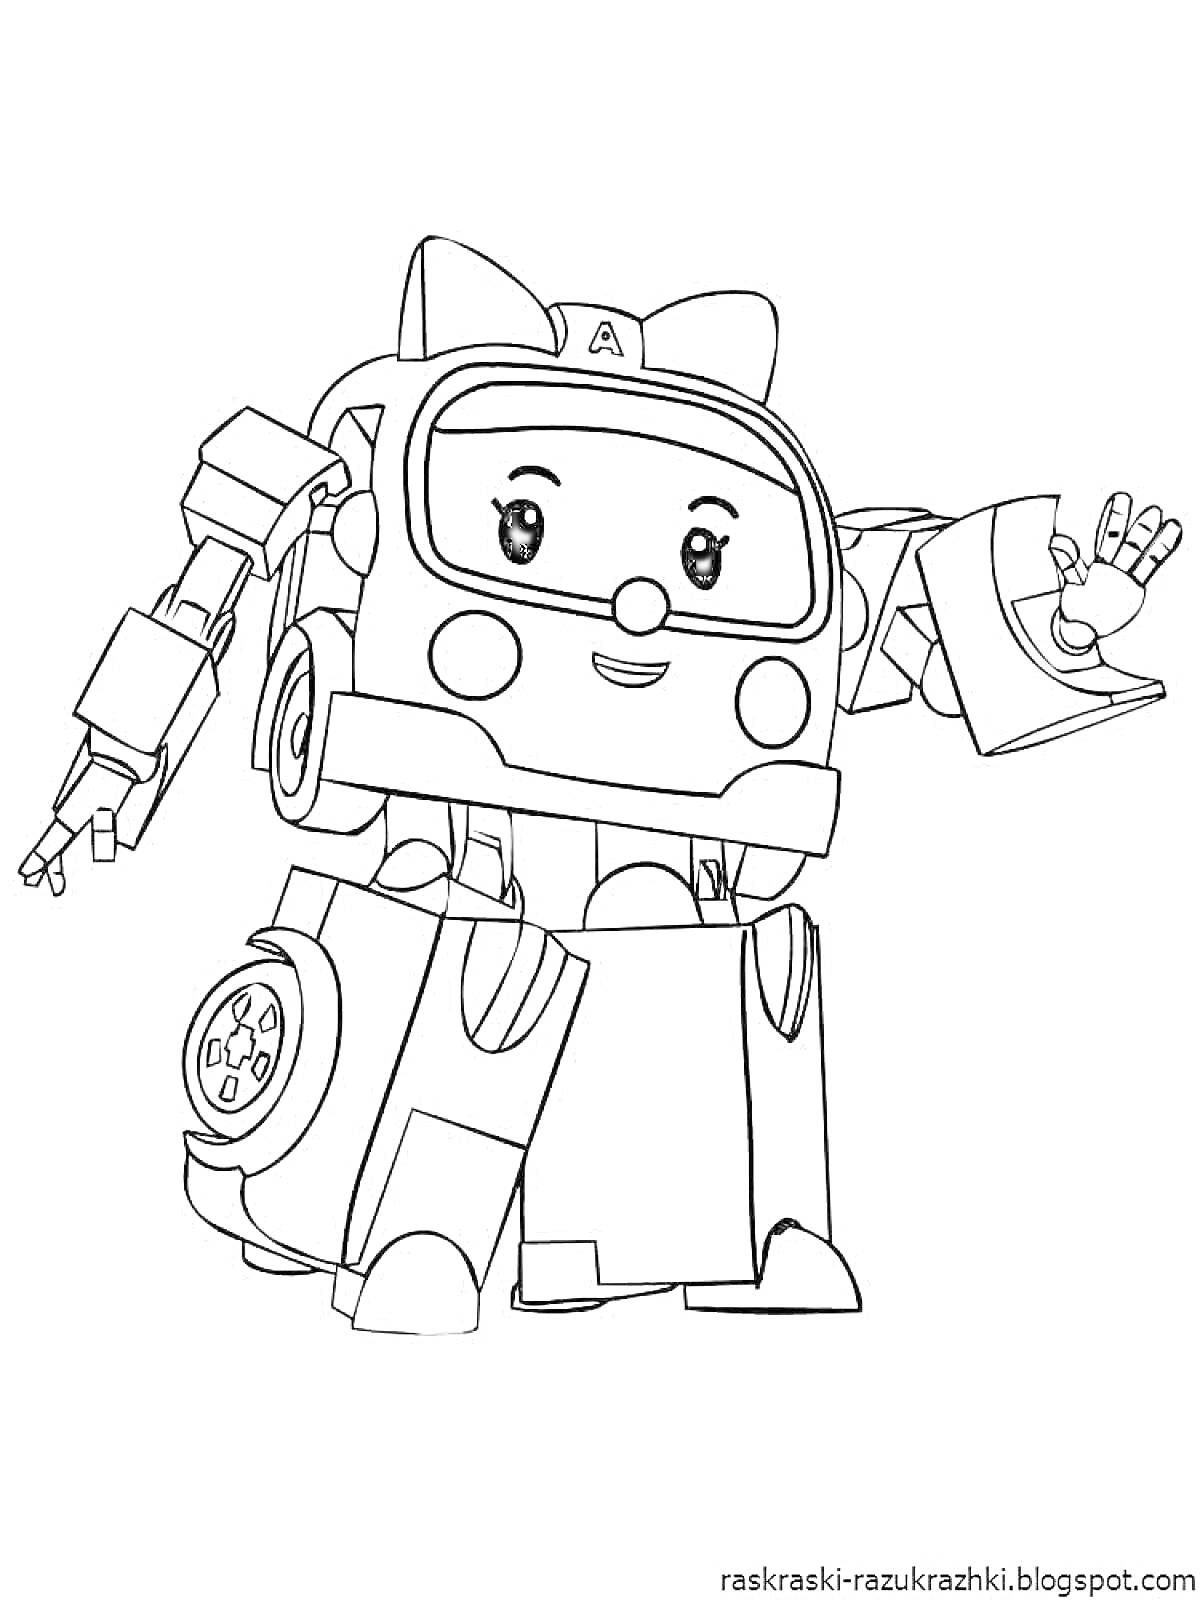 Раскраска Робот, трансформер, милое лицо, механические руки, колеса